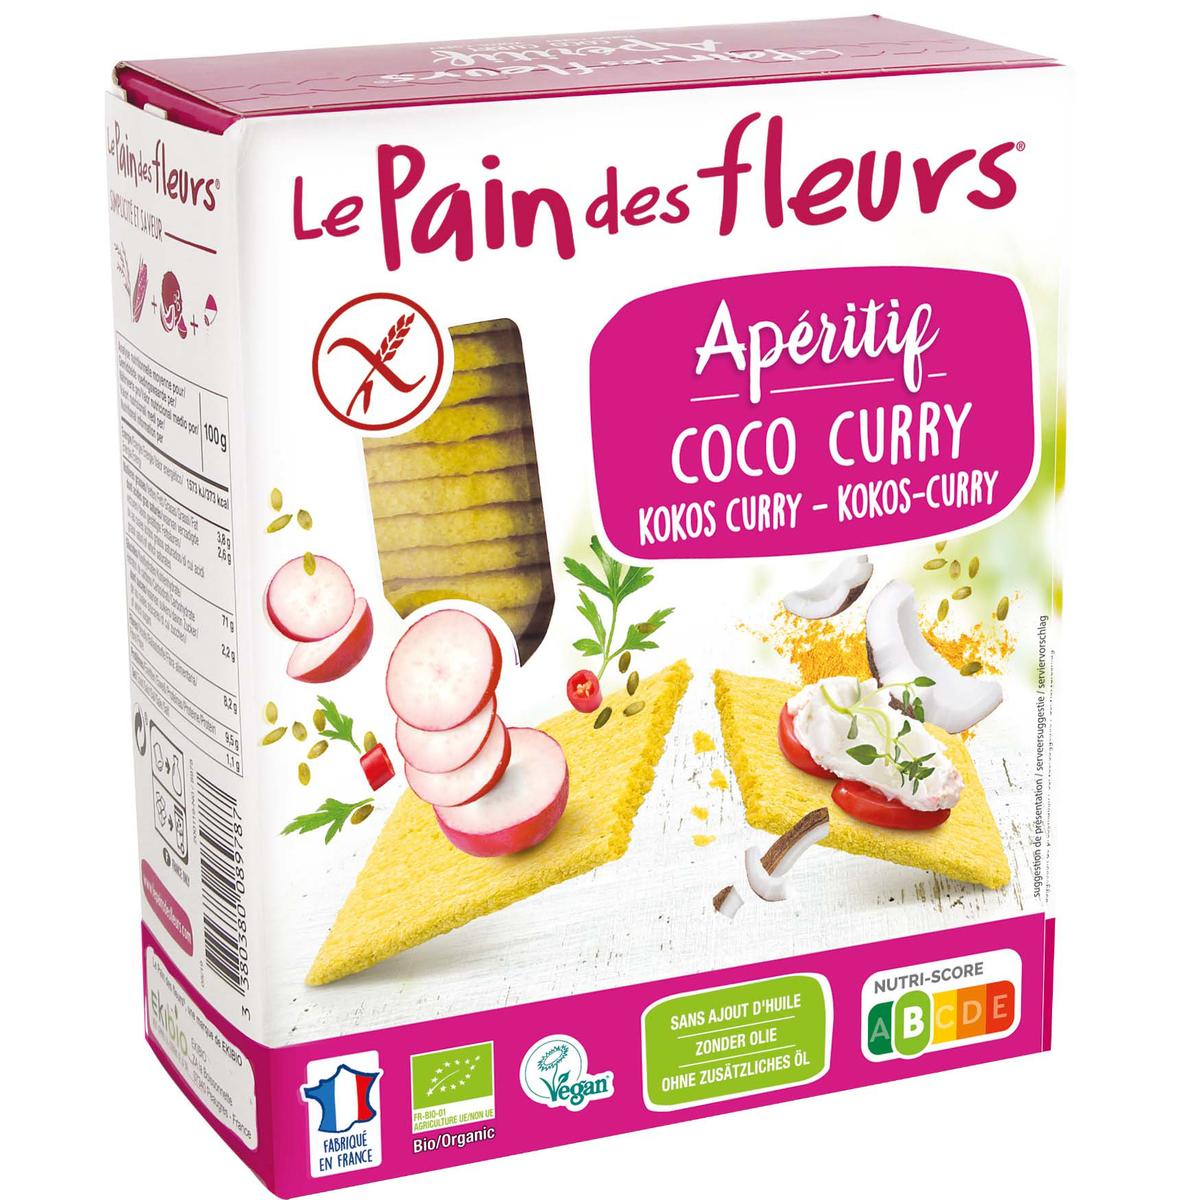 Supermarché PA / Le Pain des Fleurs Organic Crackers 150g